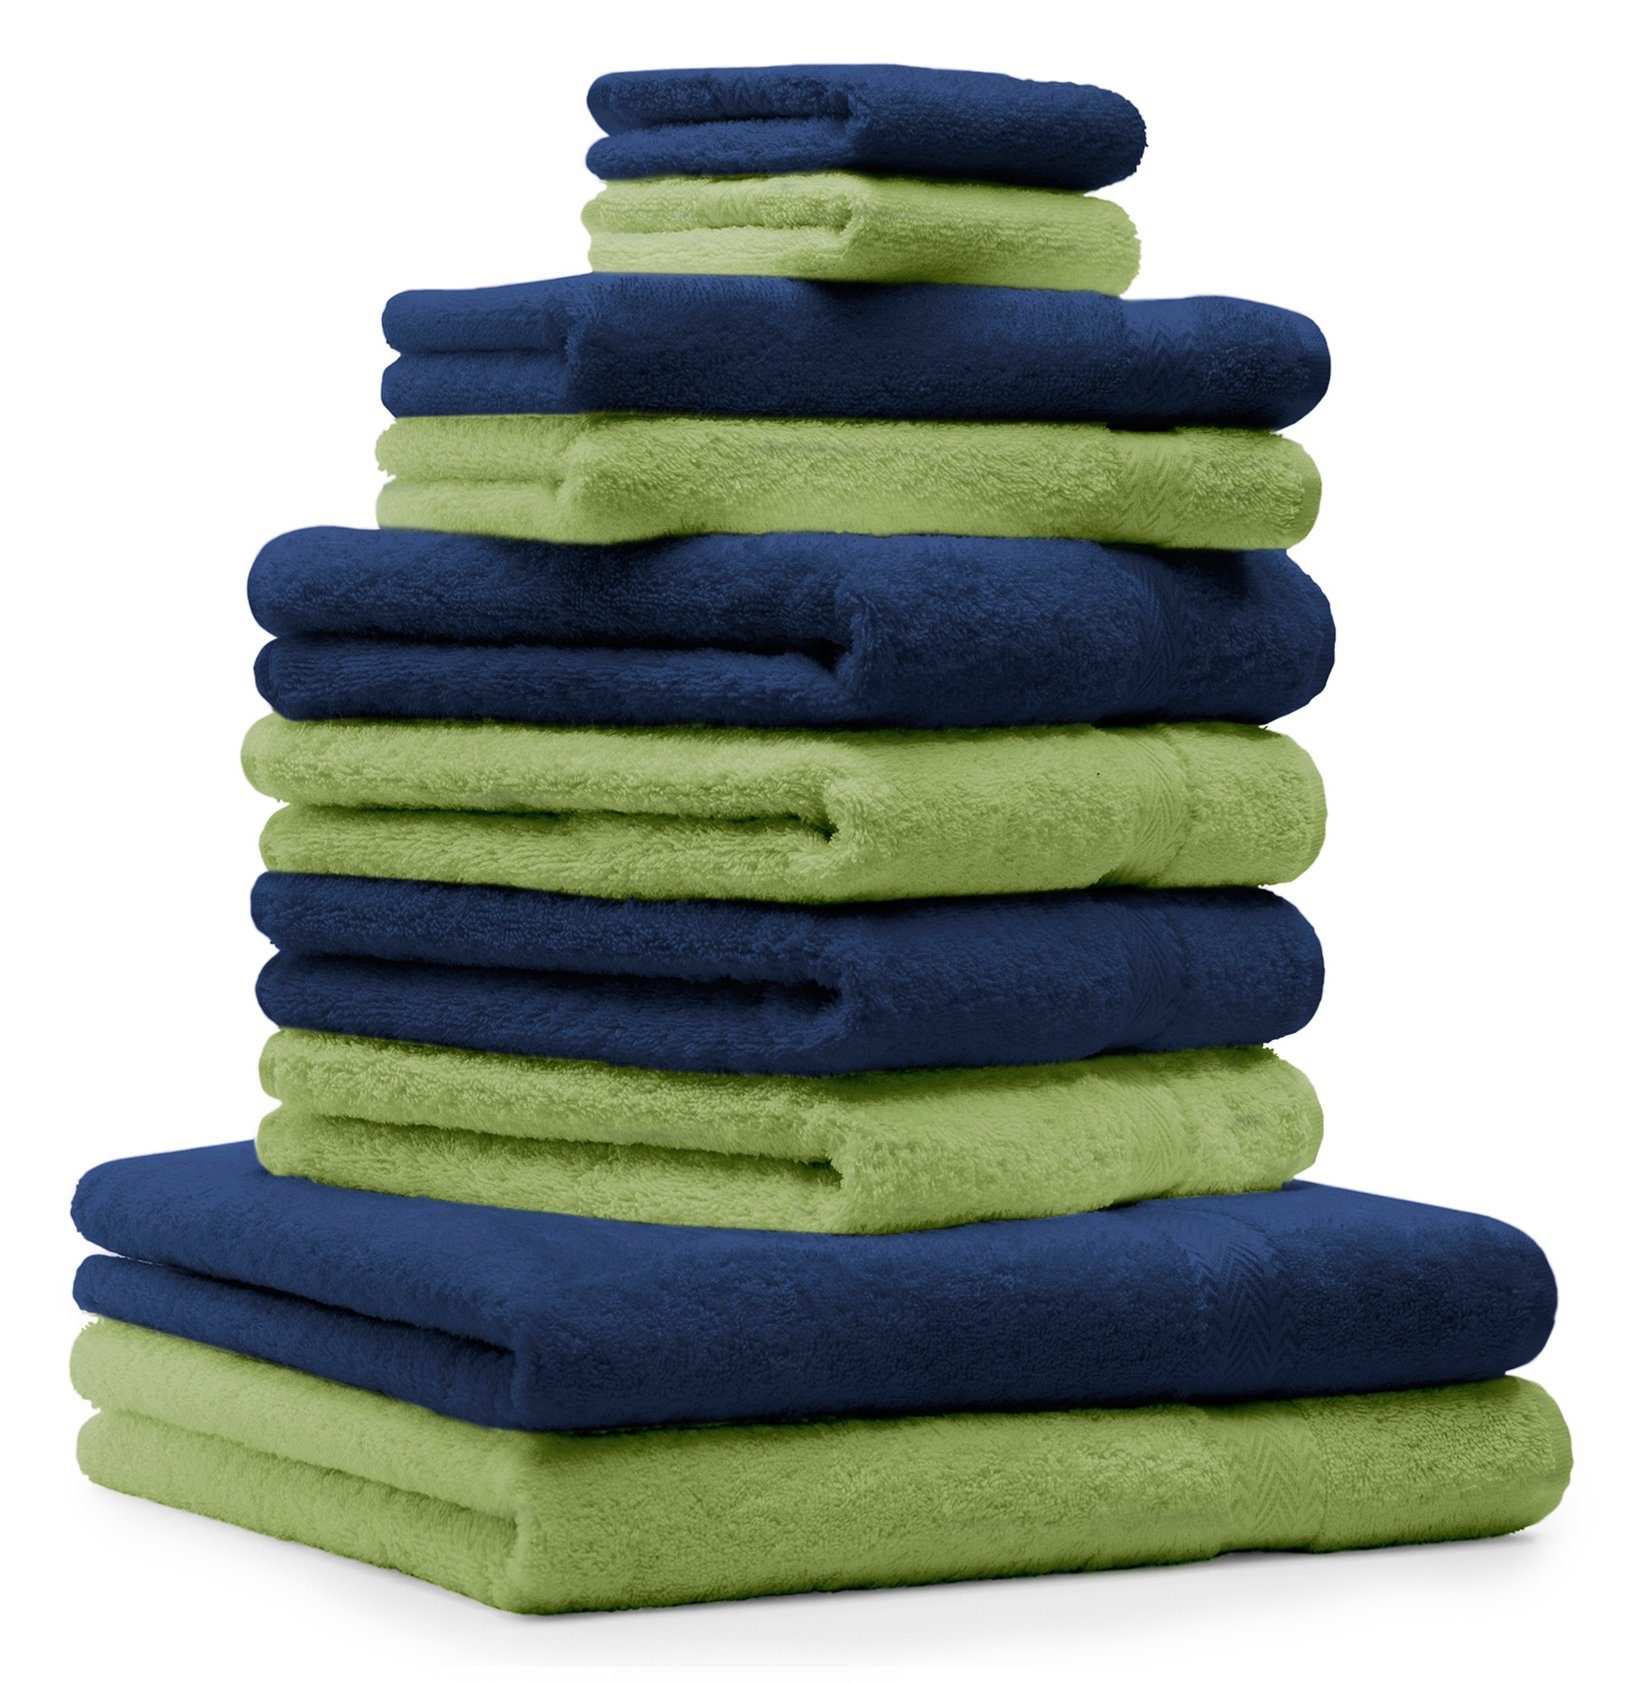 Betz Handtuch Set 10-TLG. Handtücher-Set Classic Farbe dunkelblau und apfelgrün, 100% Baumwolle